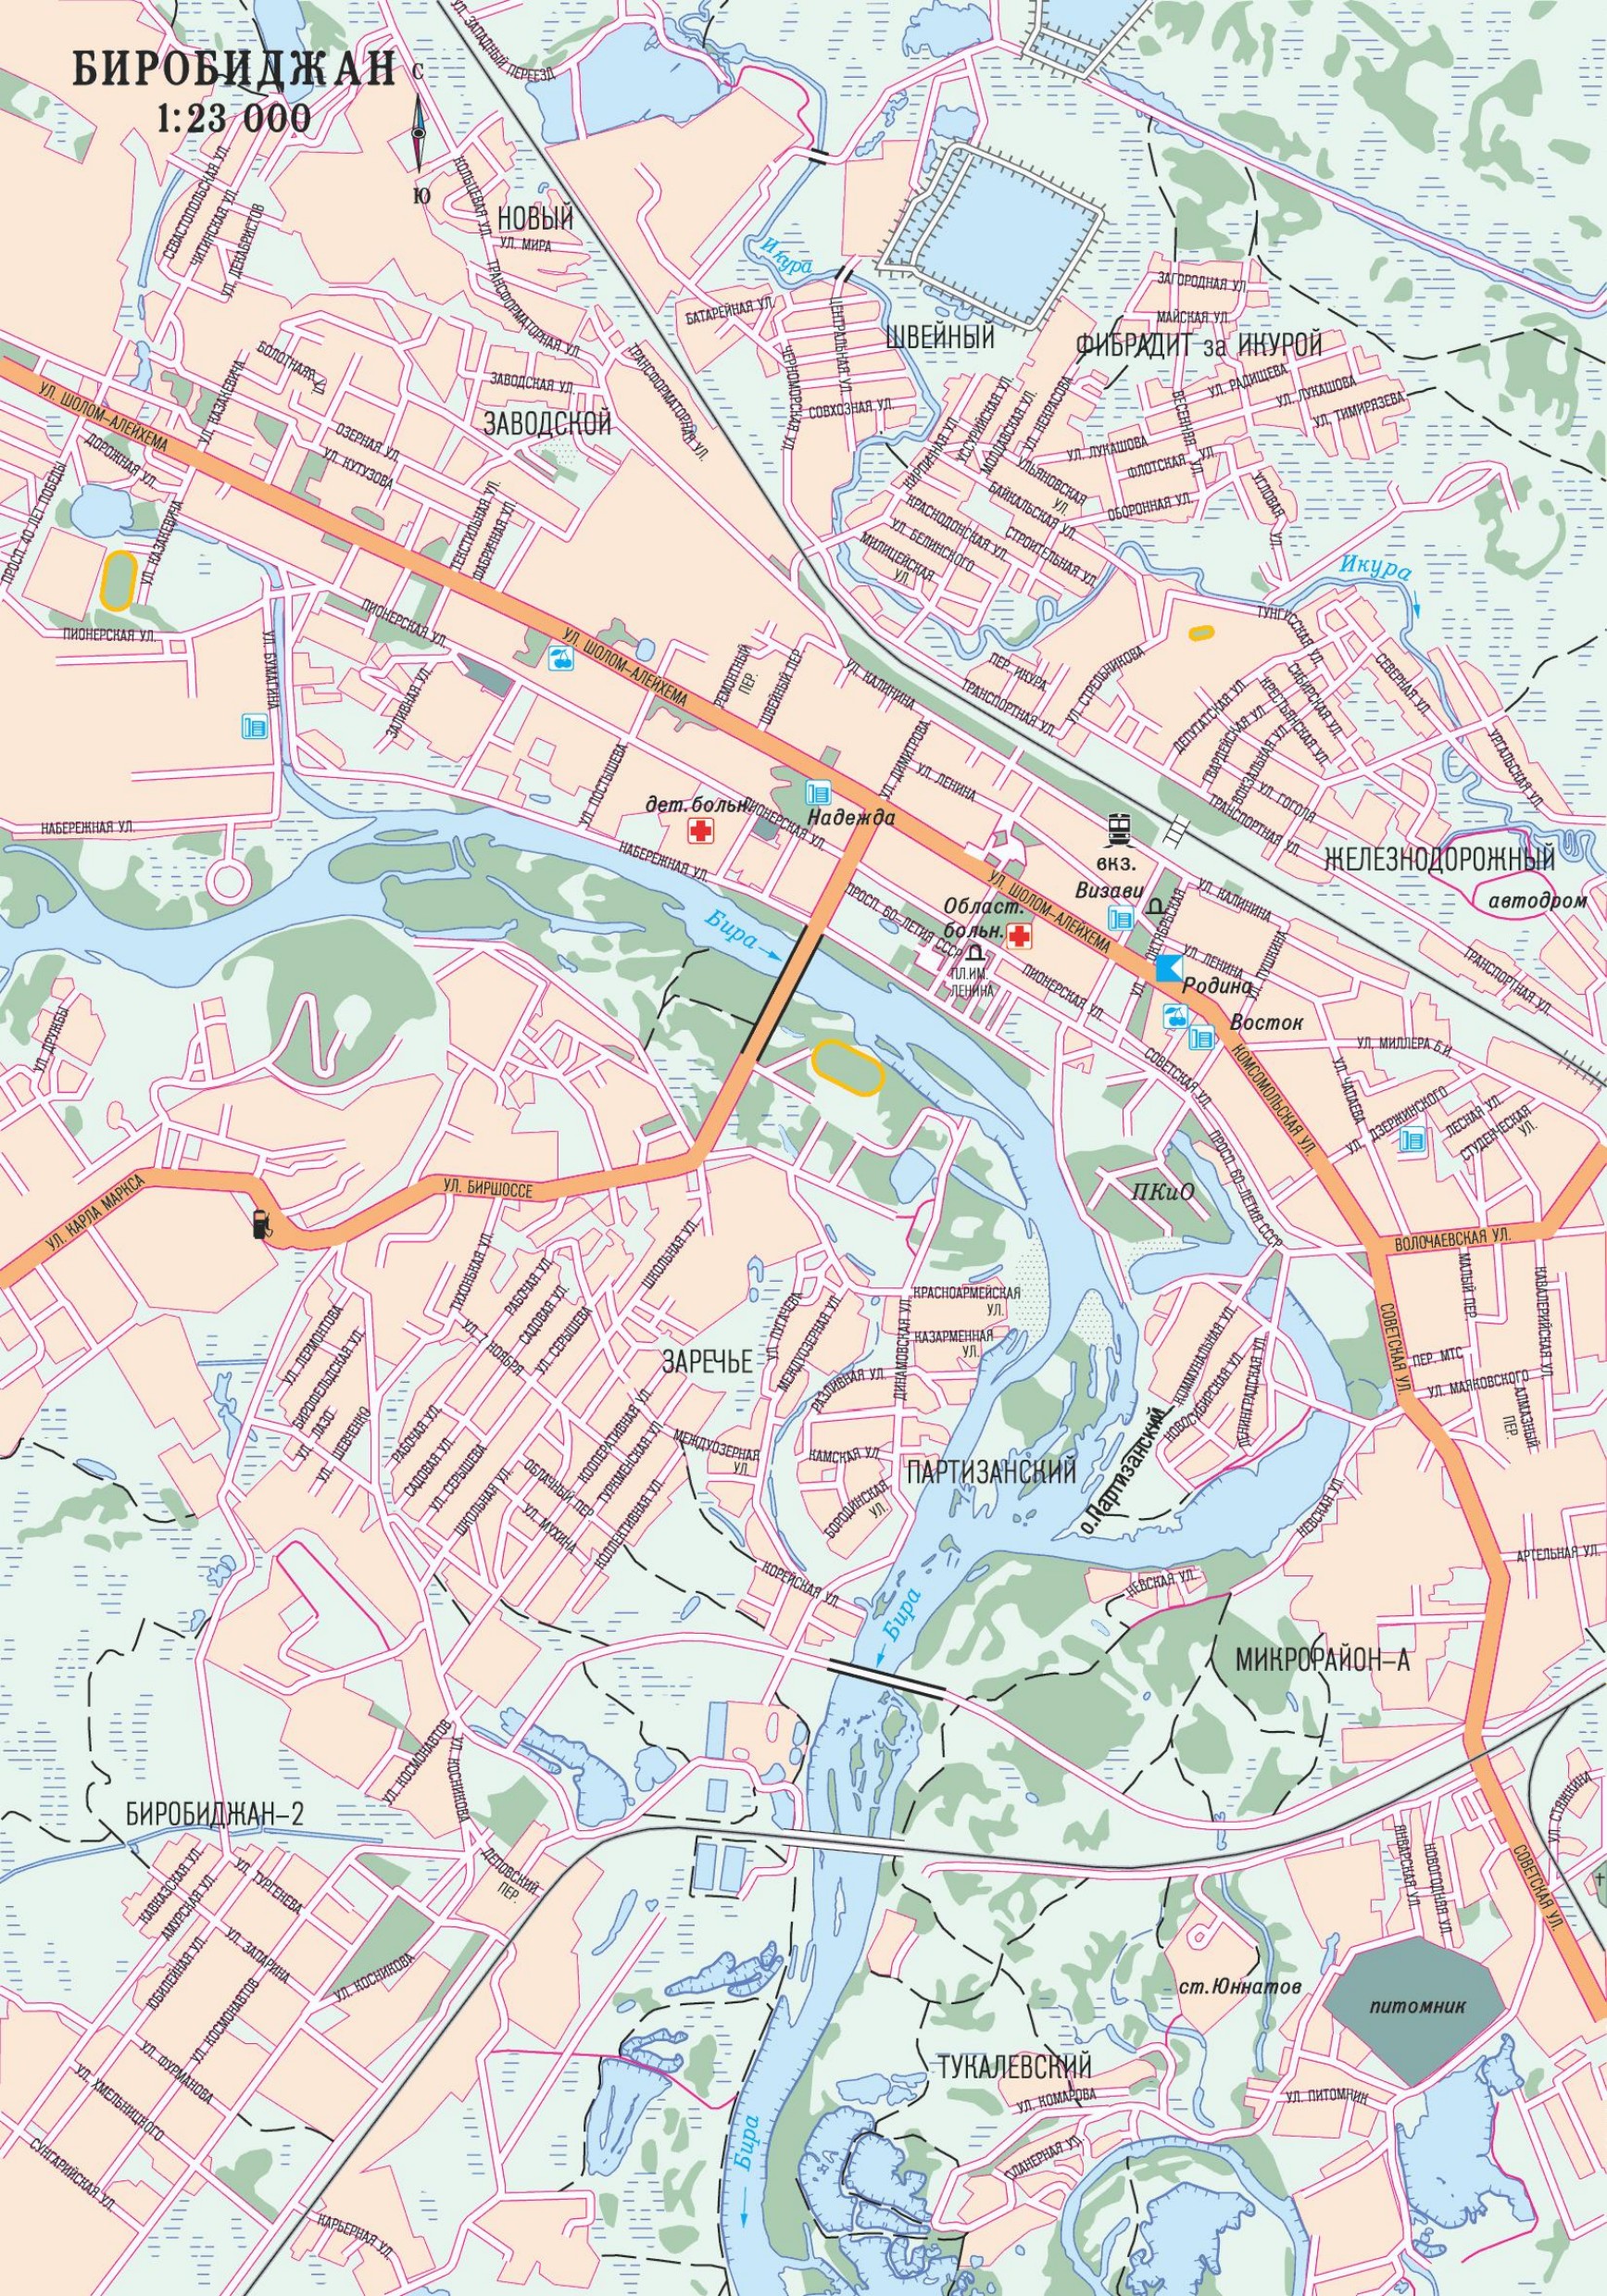 Покажи на карте биробиджан. Карта города Биробиджана с улицами. Город Биробиджан на карте. План города Биробиджана. Биробиджан карты схемы.